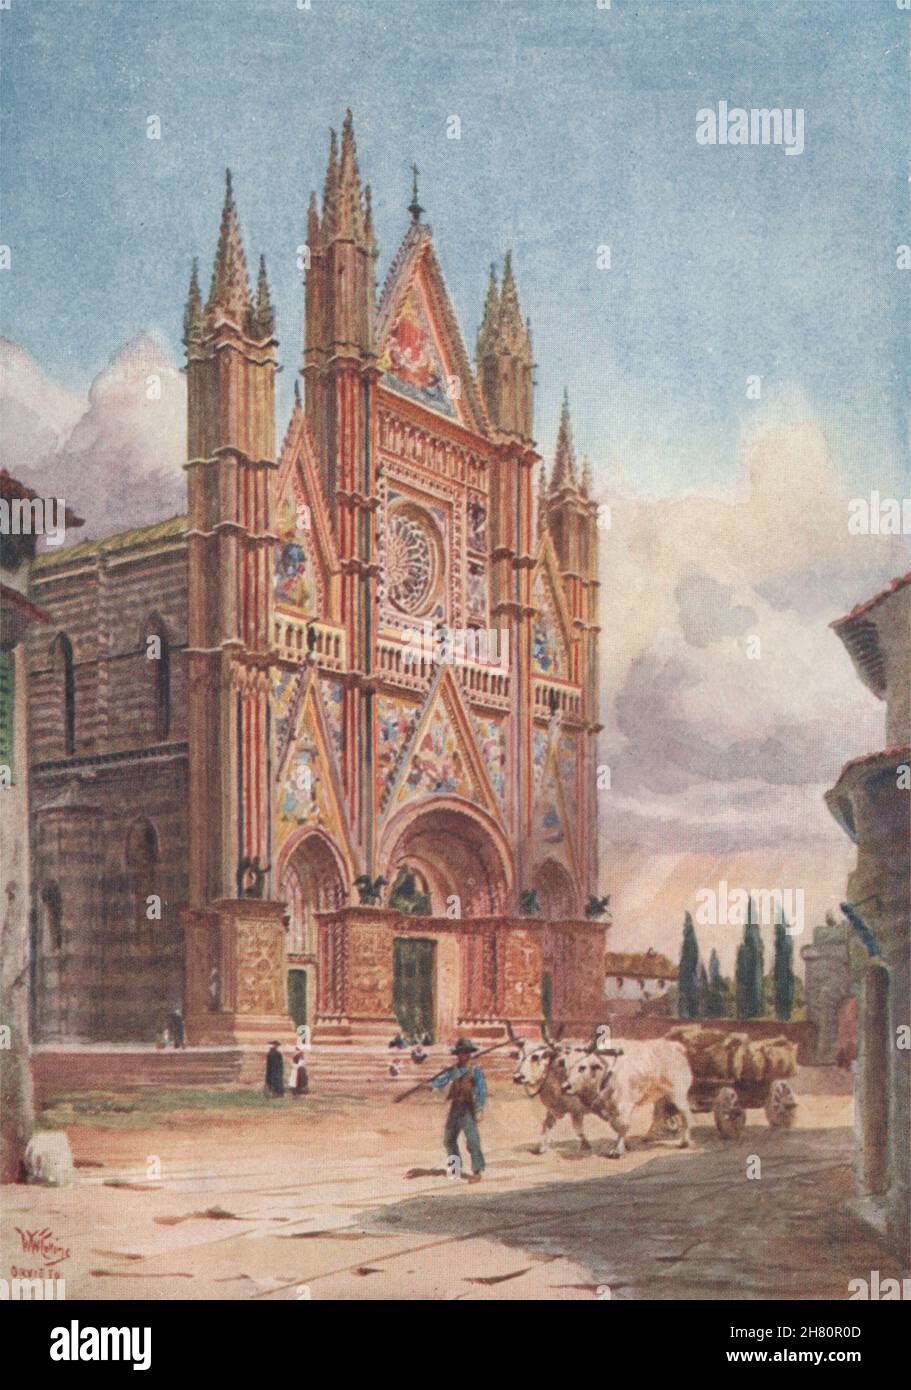 'La fachada de la Catedral, Orvieto' de William Wiehe Collins. Italia 1911 Foto de stock